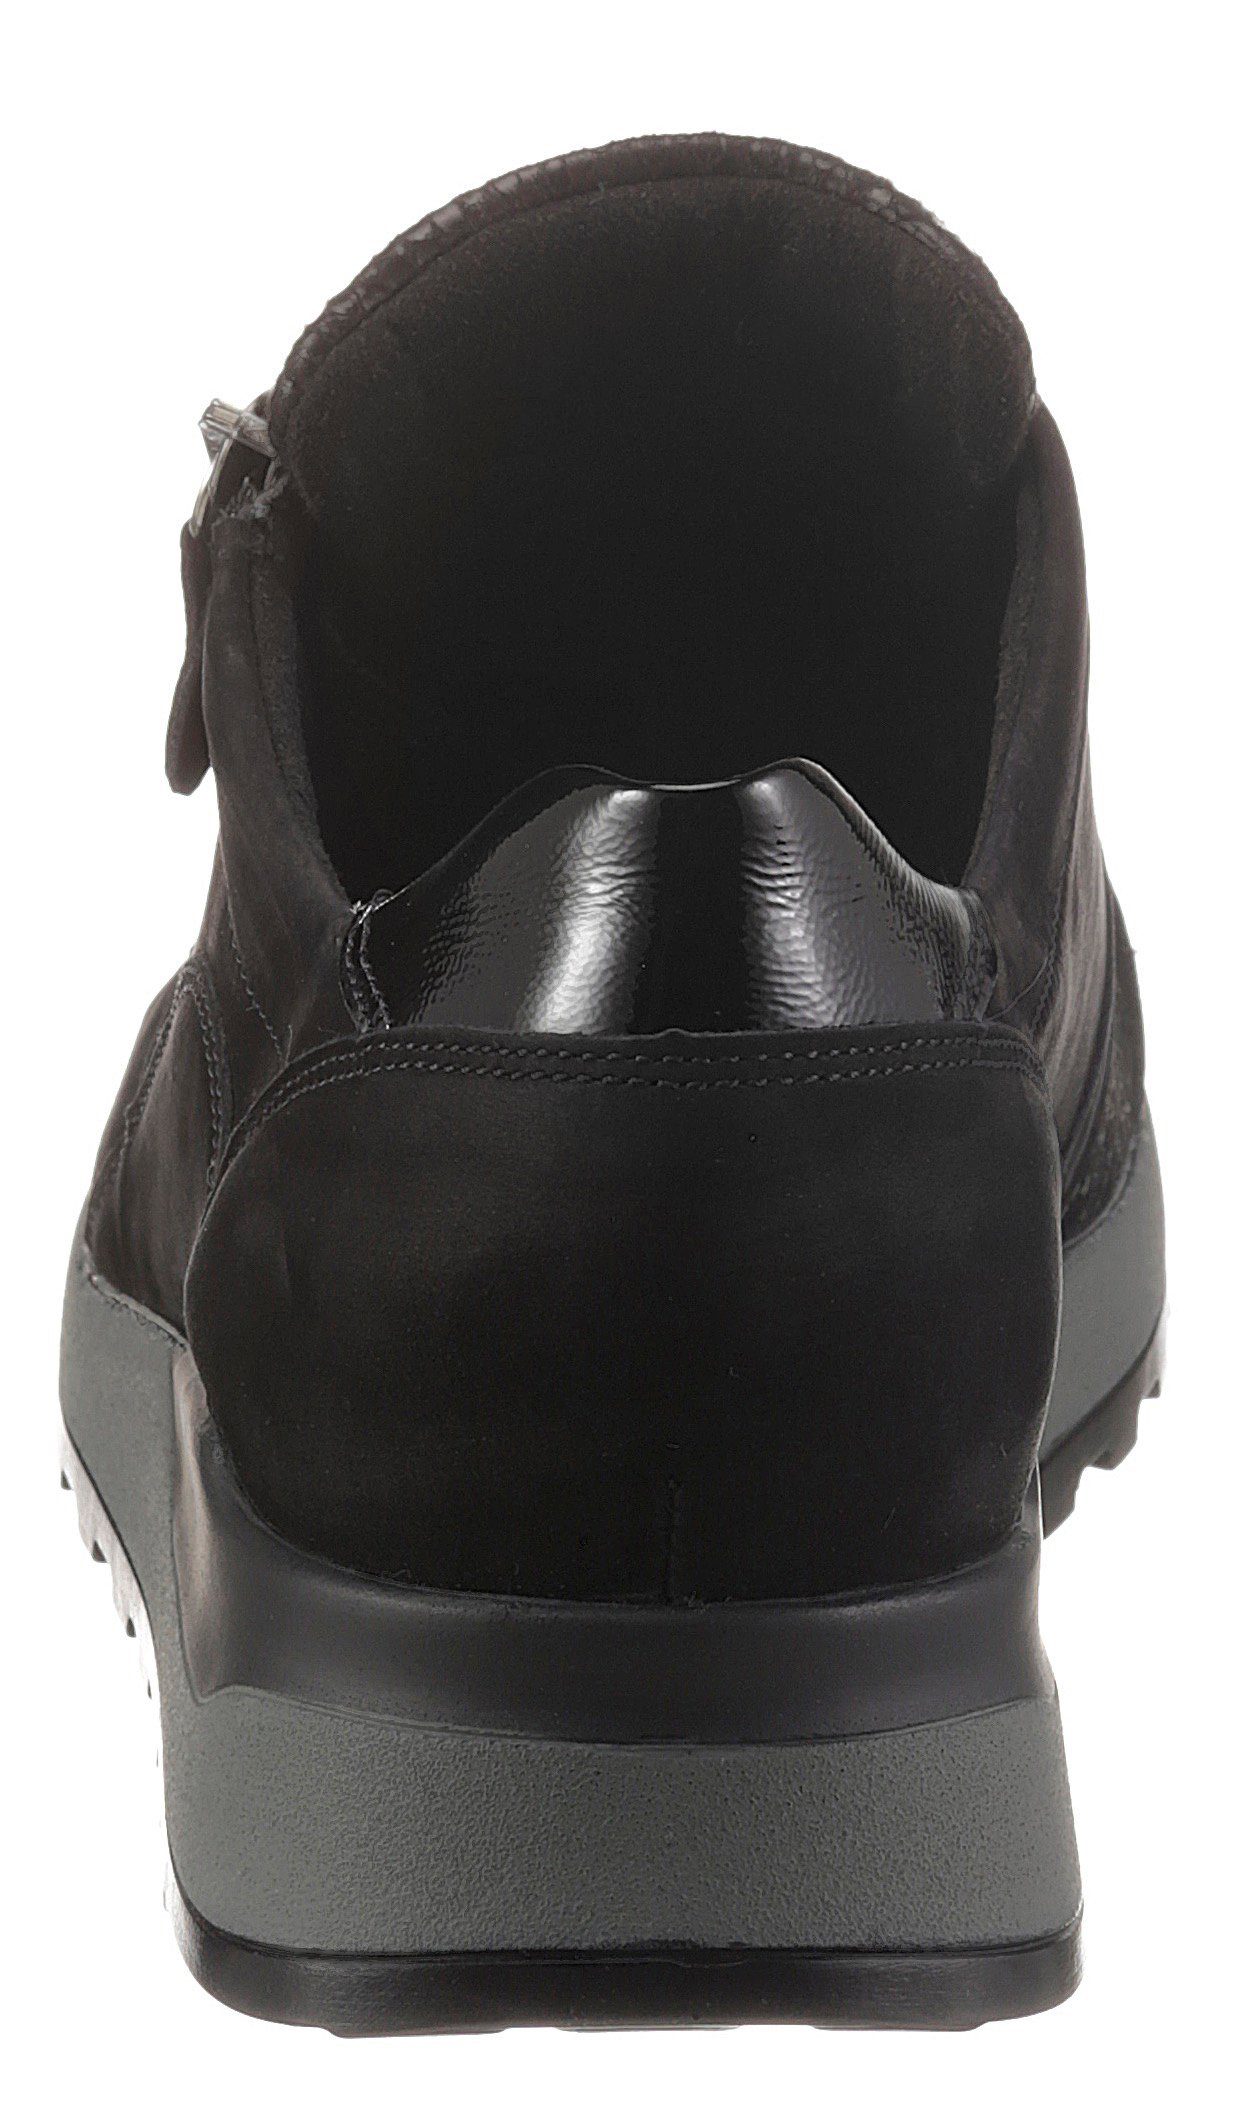 H, Ortho-Tritt-Ausstattung Weite Waldläufer HIROKO in schwarz Keilsneaker